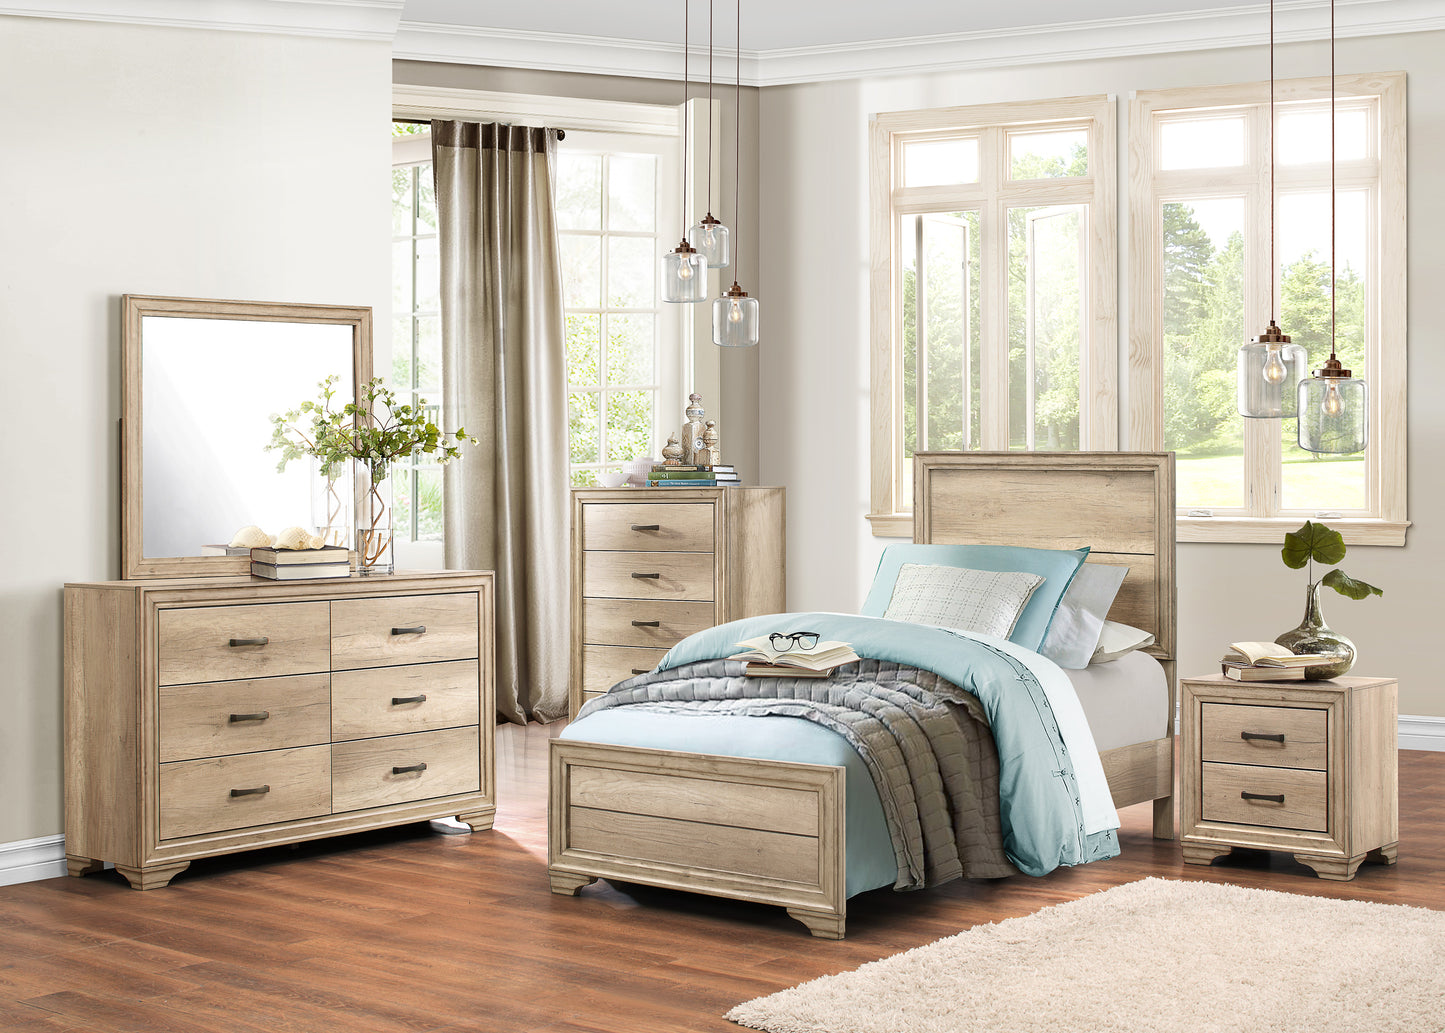 Laudine Rustic 4PC Bedroom Set Twin Bed, Dresser, Mirror, Nightstand in Weather Industrial Wood